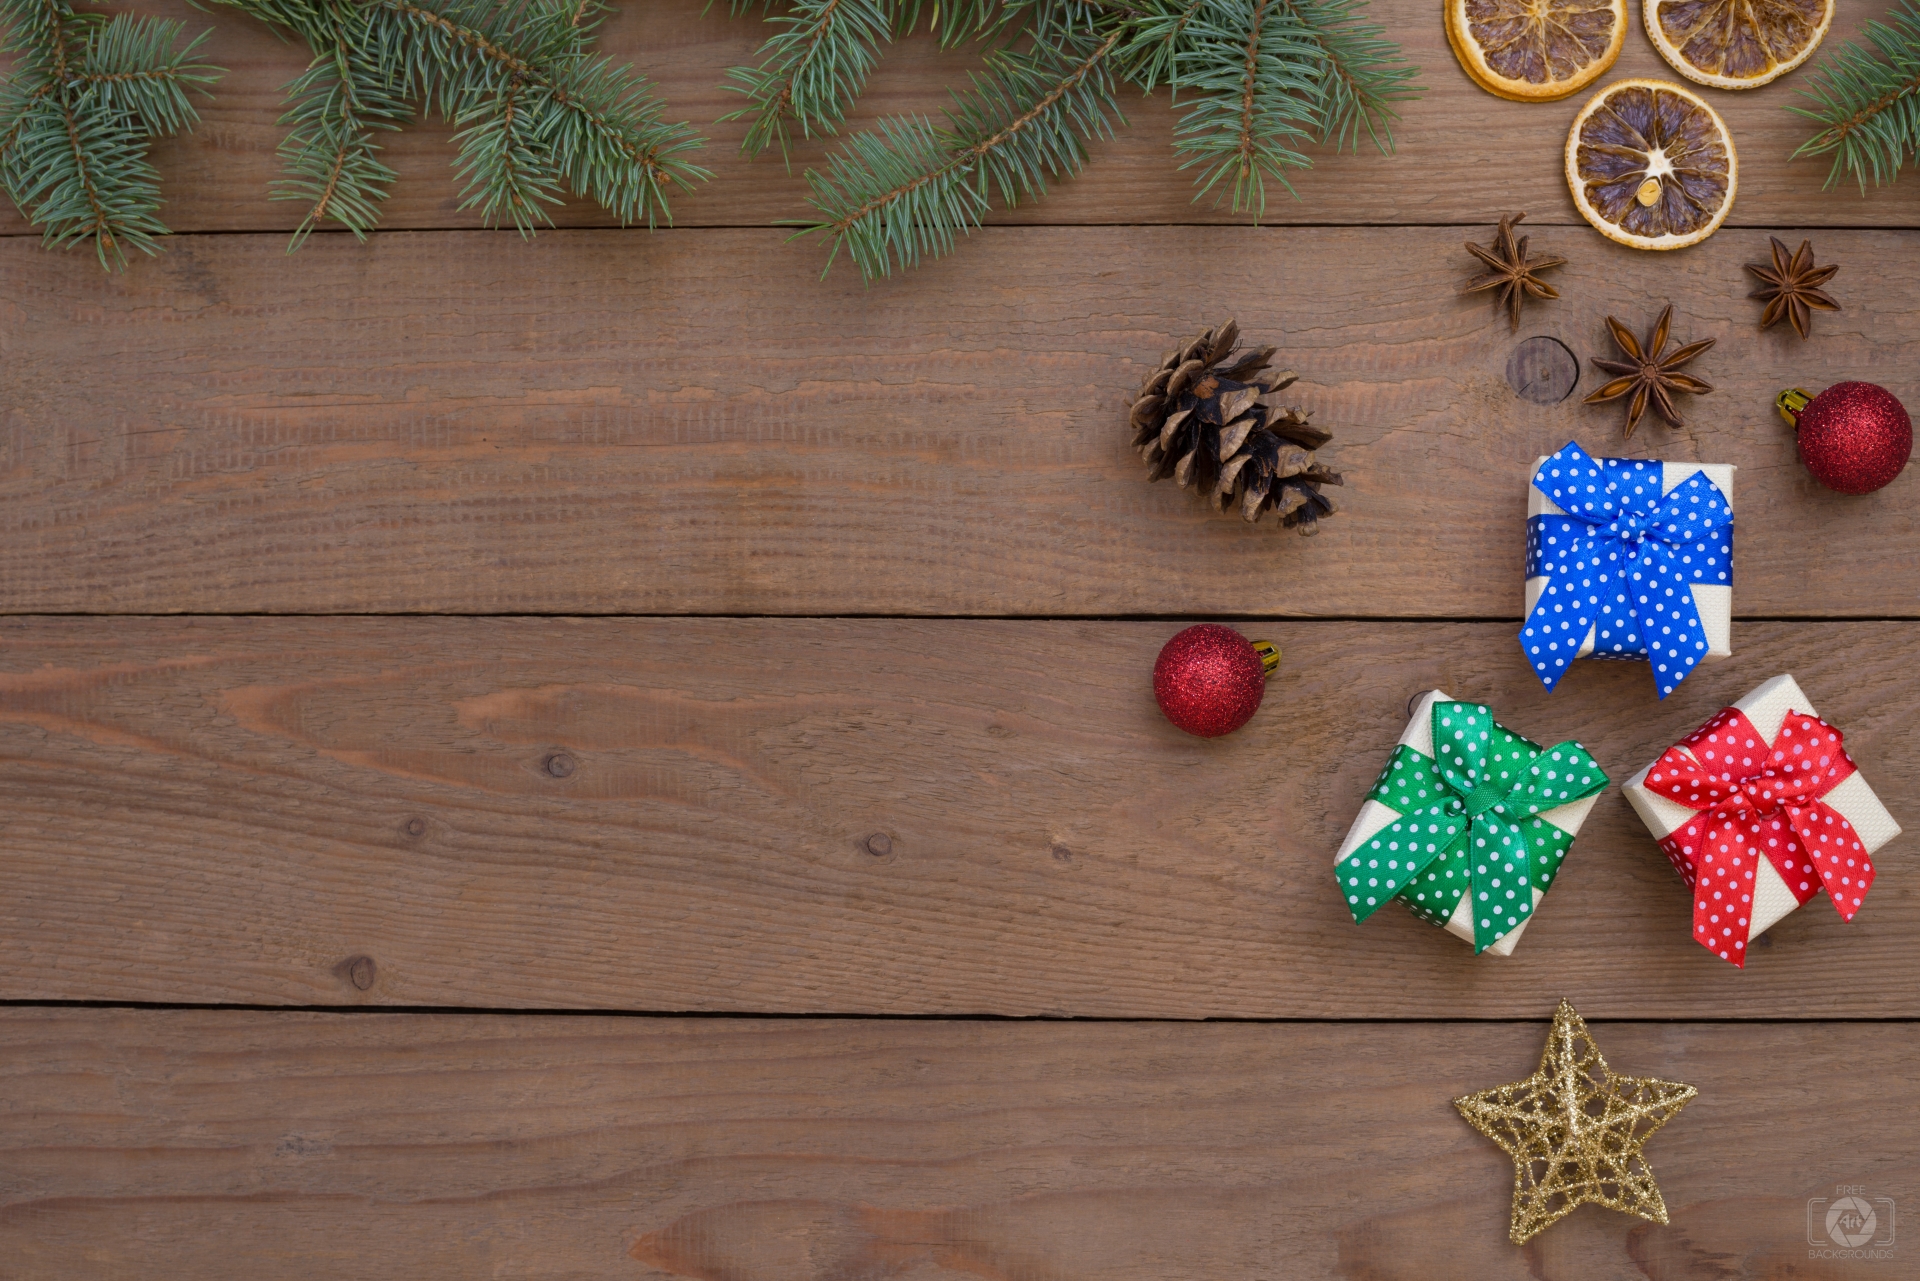 Hình nền Giáng sinh – Hãy cùng thư giãn và cảm nhận không khí lễ hội của mùa Giáng sinh với hình nền đầy màu sắc và hợp tông từ những hình ảnh xuân yêu thích. Hình nền Giáng sinh sẽ giúp cho màn hình của bạn trở nên sinh động và lãng mạn hơn bao giờ hết.